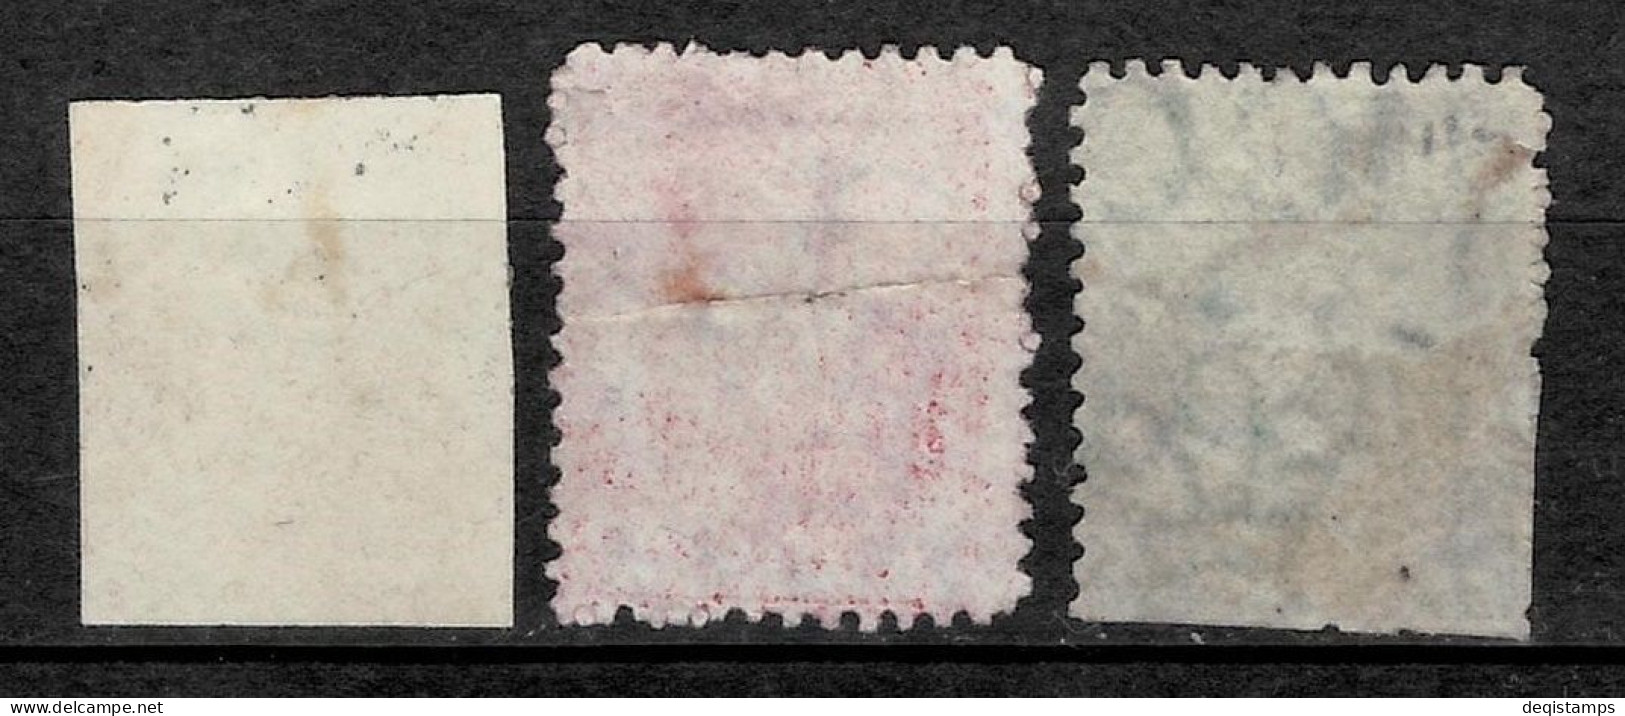 Trinidad And Tobago Stamps 1859-60 Year  Used - Trinidad Y Tobago